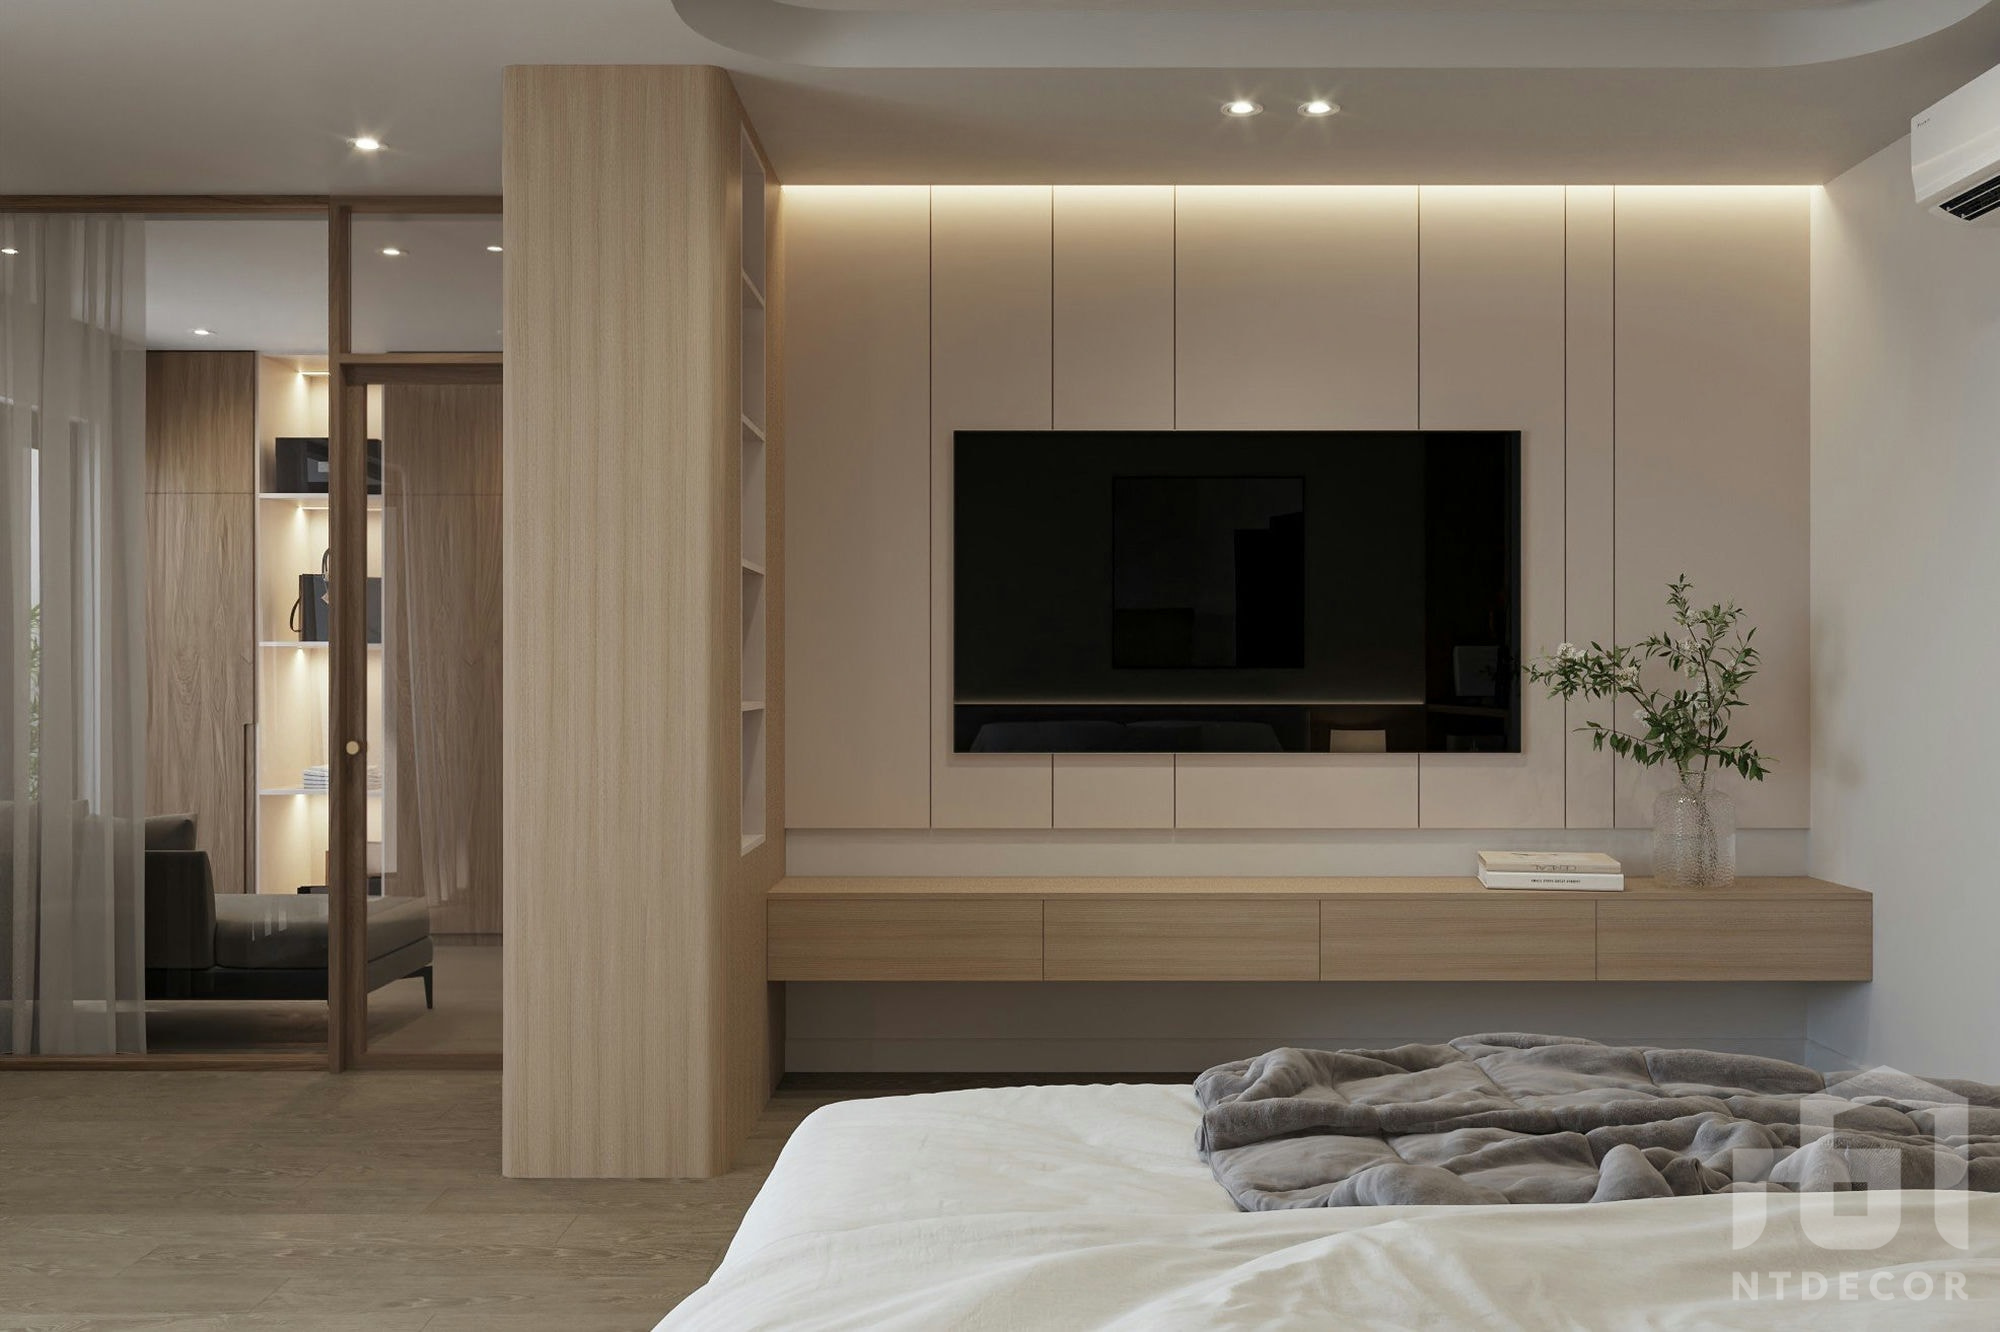 Bedroom 3D Design of Hieu Hang's House Interior Design Modern Style | NTDecor